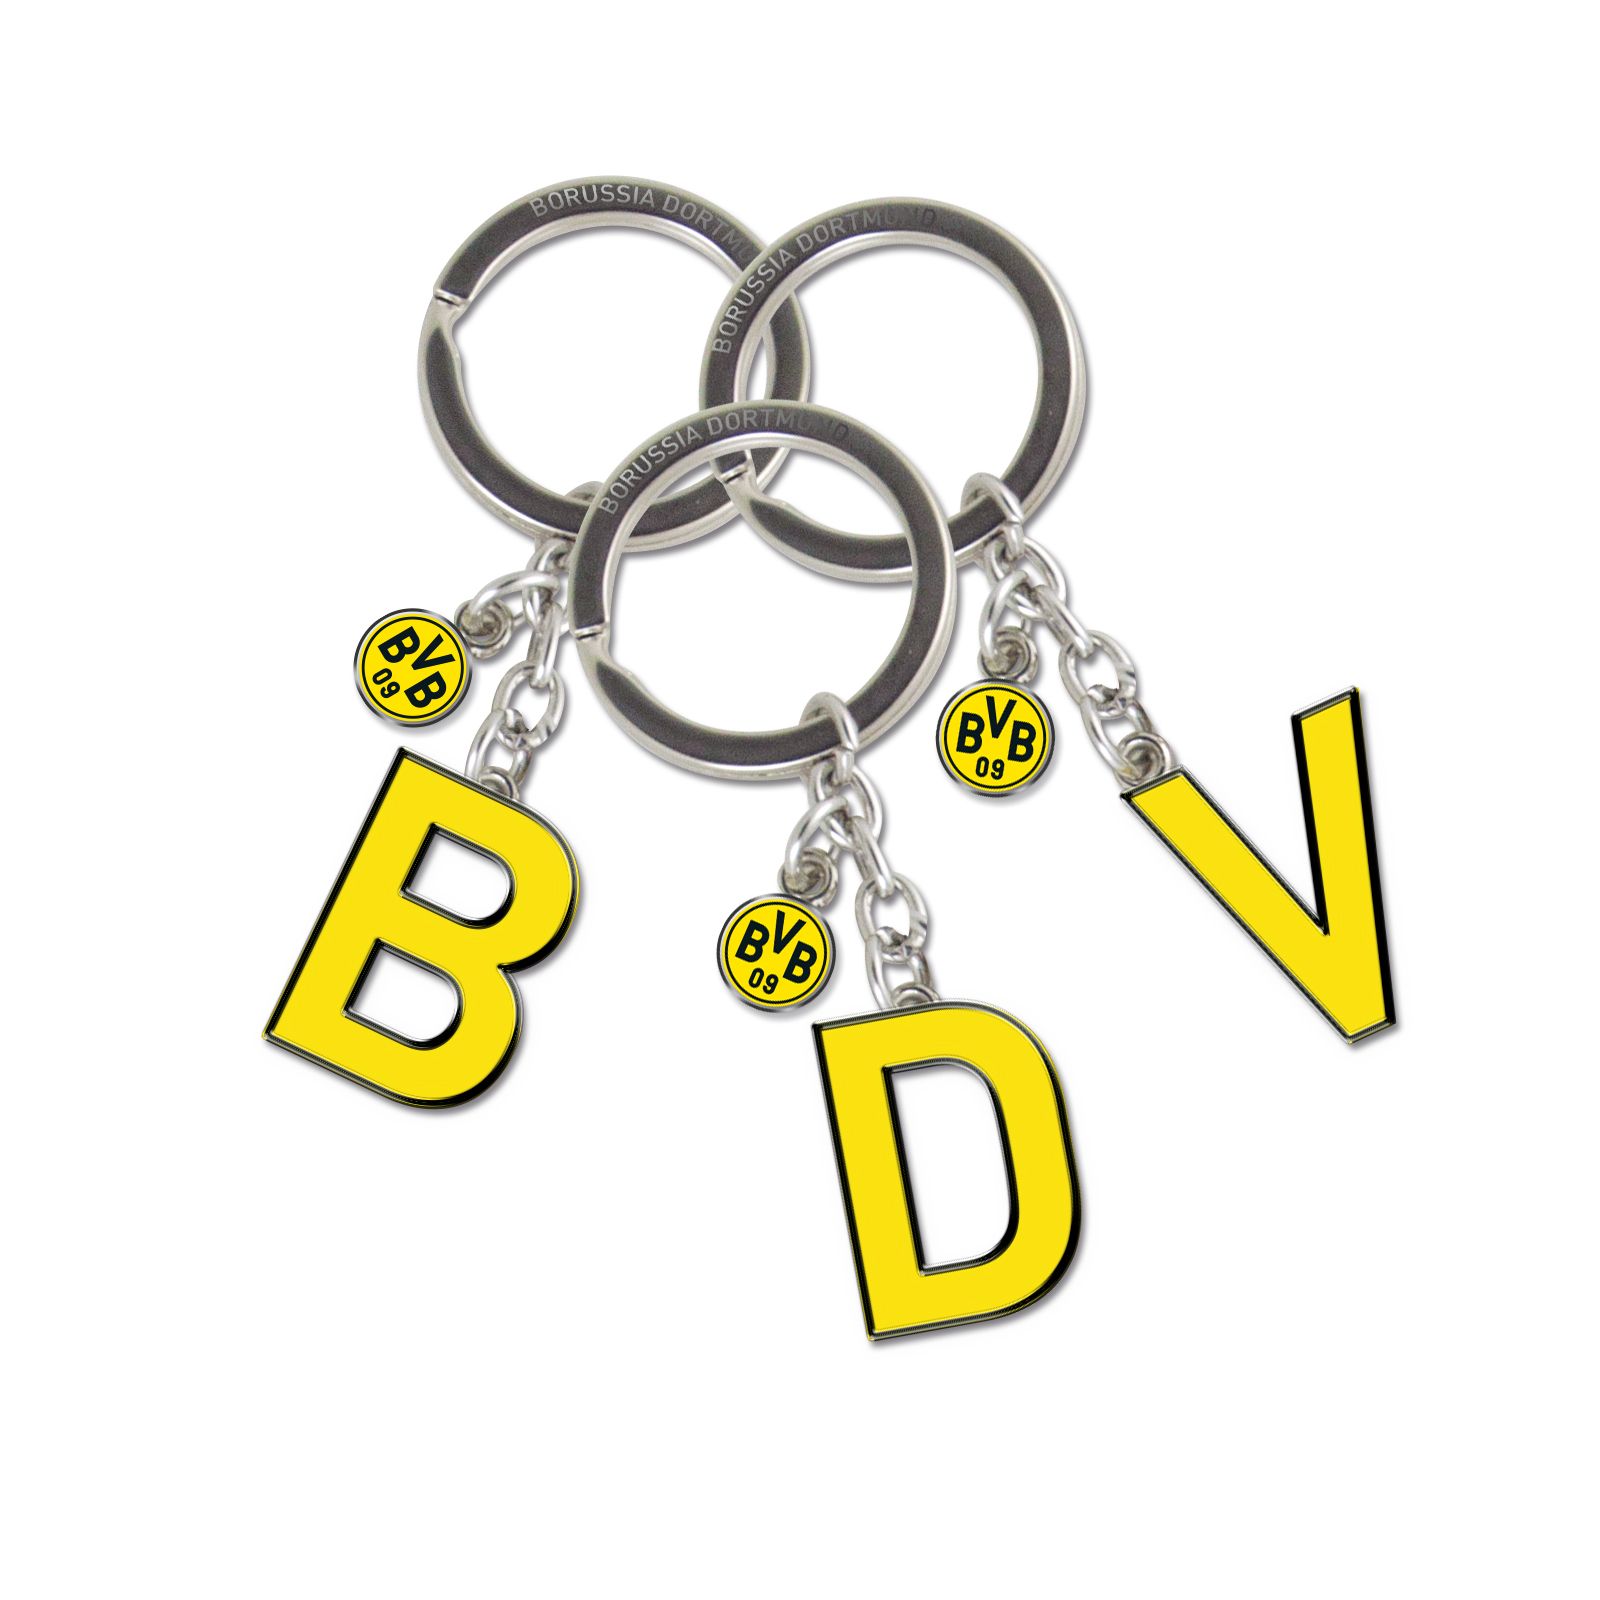 Echter Fanartikel Schlüsselanhänger Neu ovp BVB Borussia Dortmund 